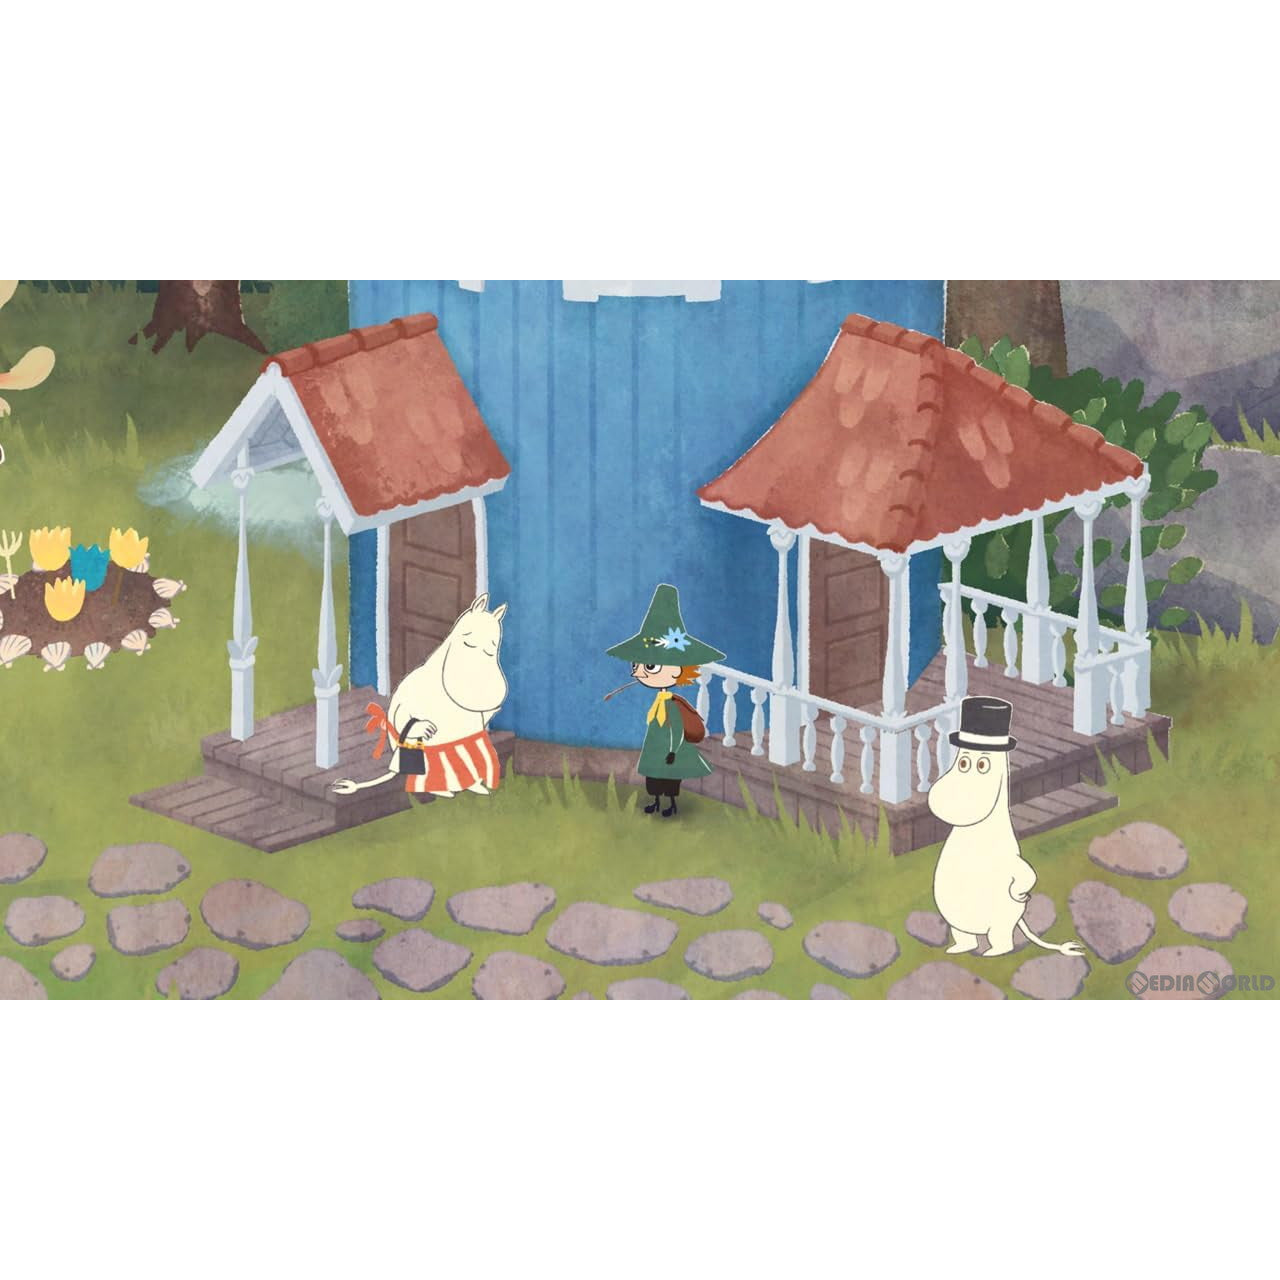 【中古即納】[Switch]スナフキン:ムーミン谷のメロディ(Snufkin: Melody of Moominvalley) 通常版(20240613)